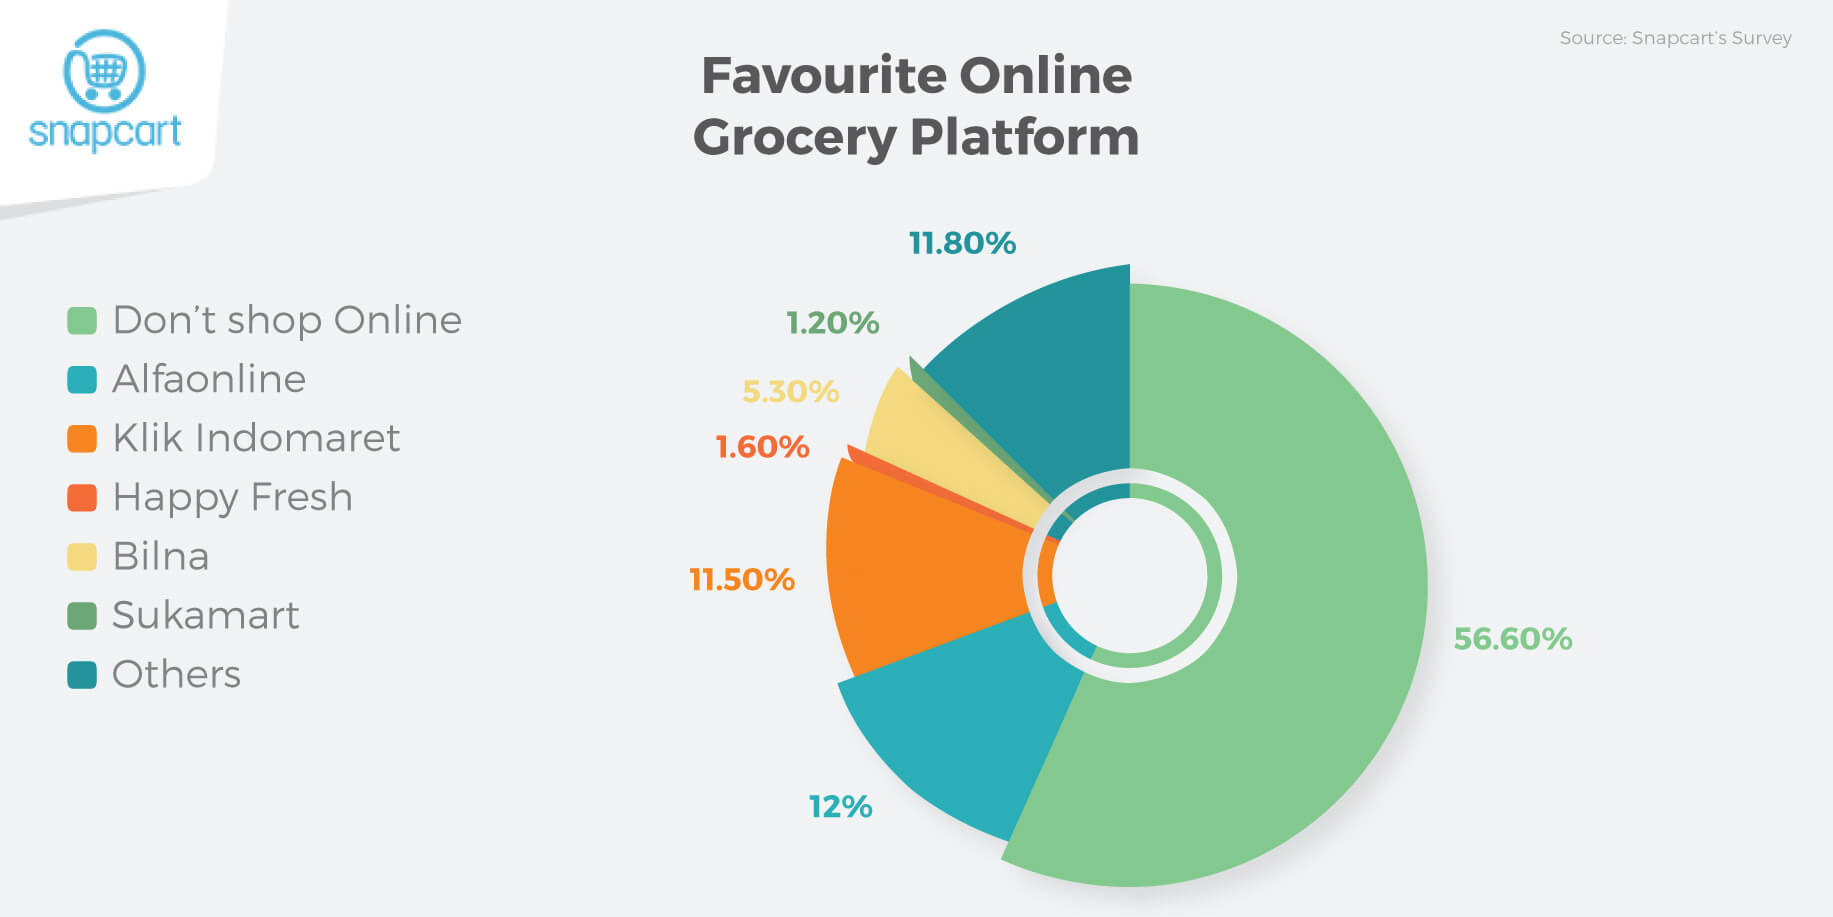 Favorite Online Grocery Platform